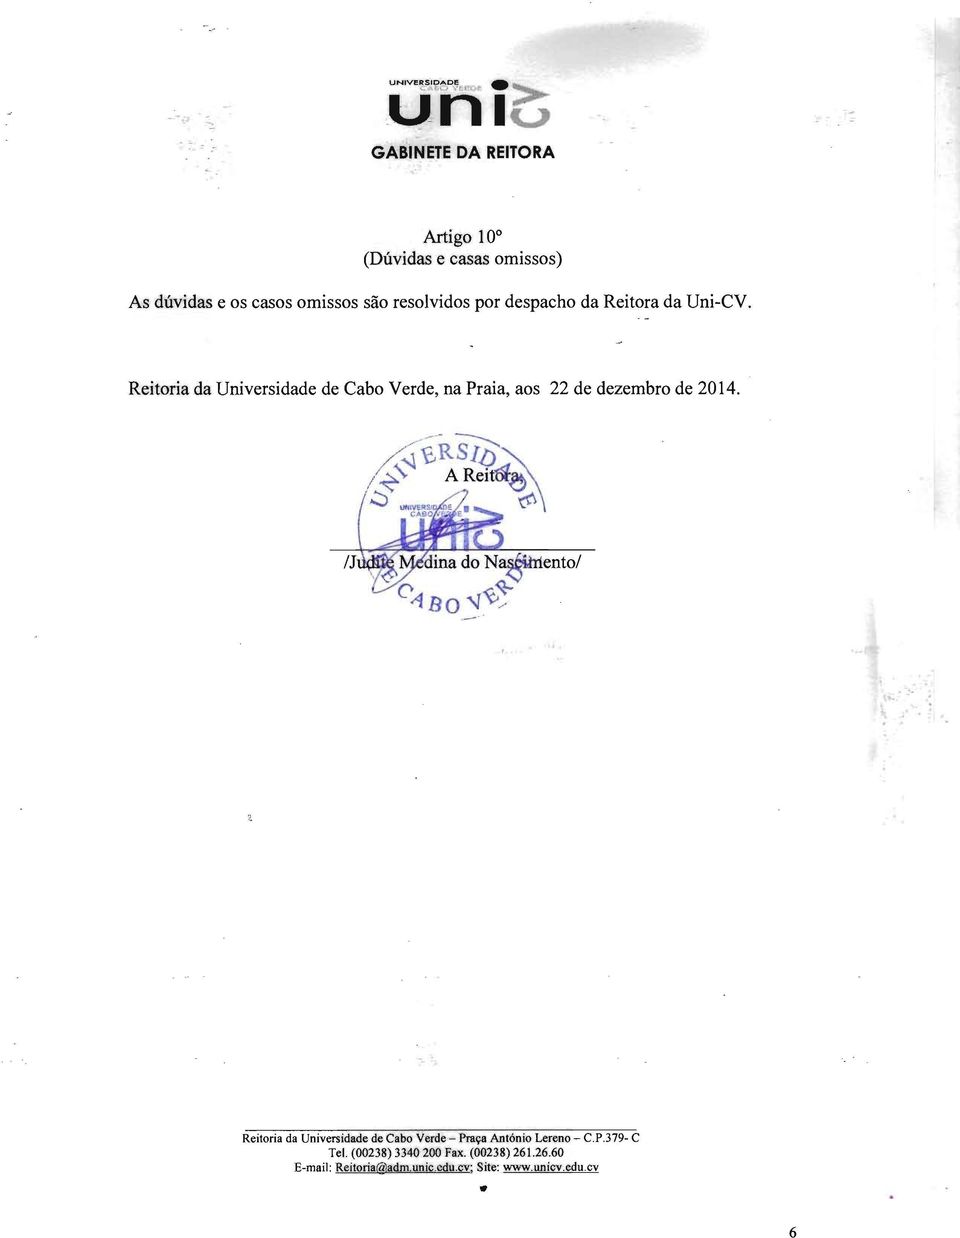 Reitora da Uni-CV. Reitoria da Universidade de Cabo Verde, na Praia, aos 22 de dezembro de 2014.